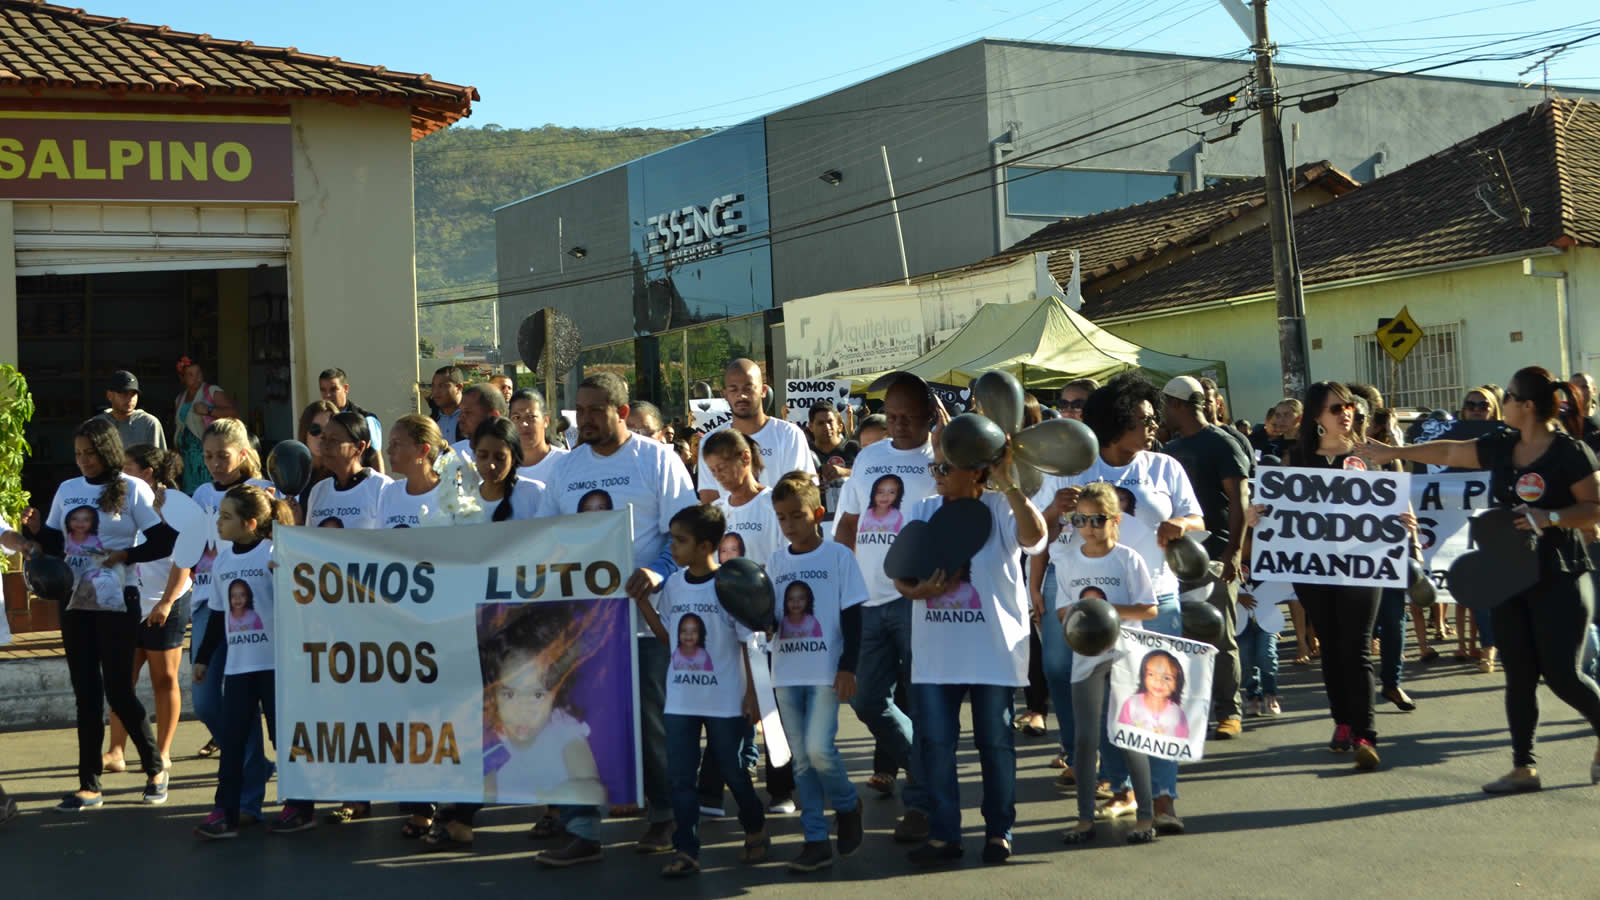 Homenagem, solidariedade, tristeza e pedido de justiça motivaram a caminhada (Foto: Eliane Alves)